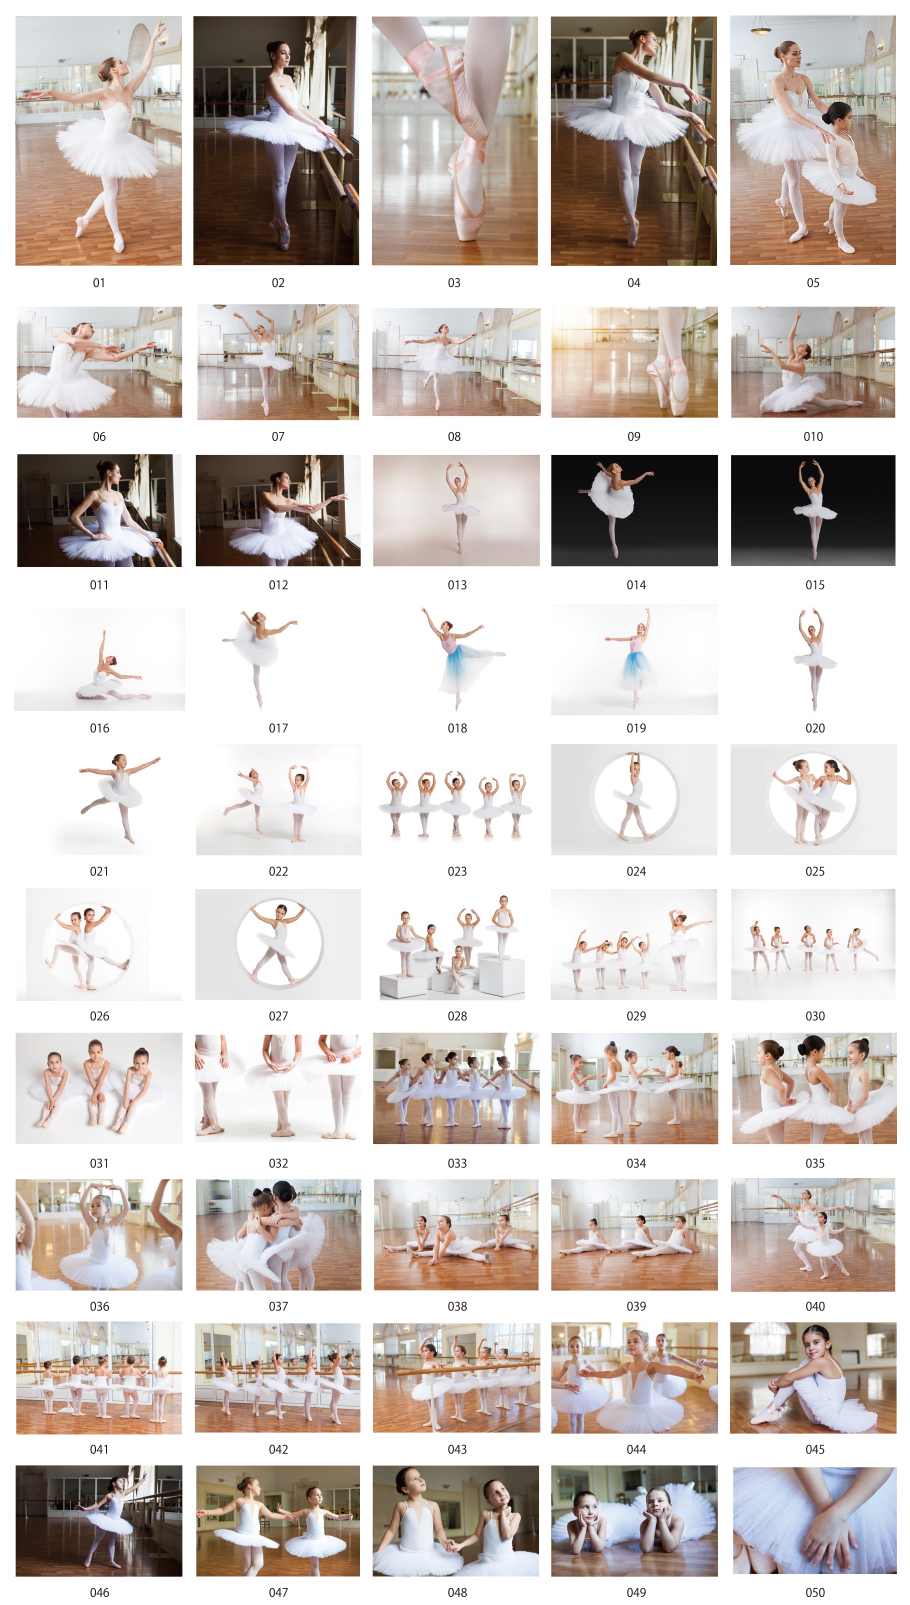 Balet photos